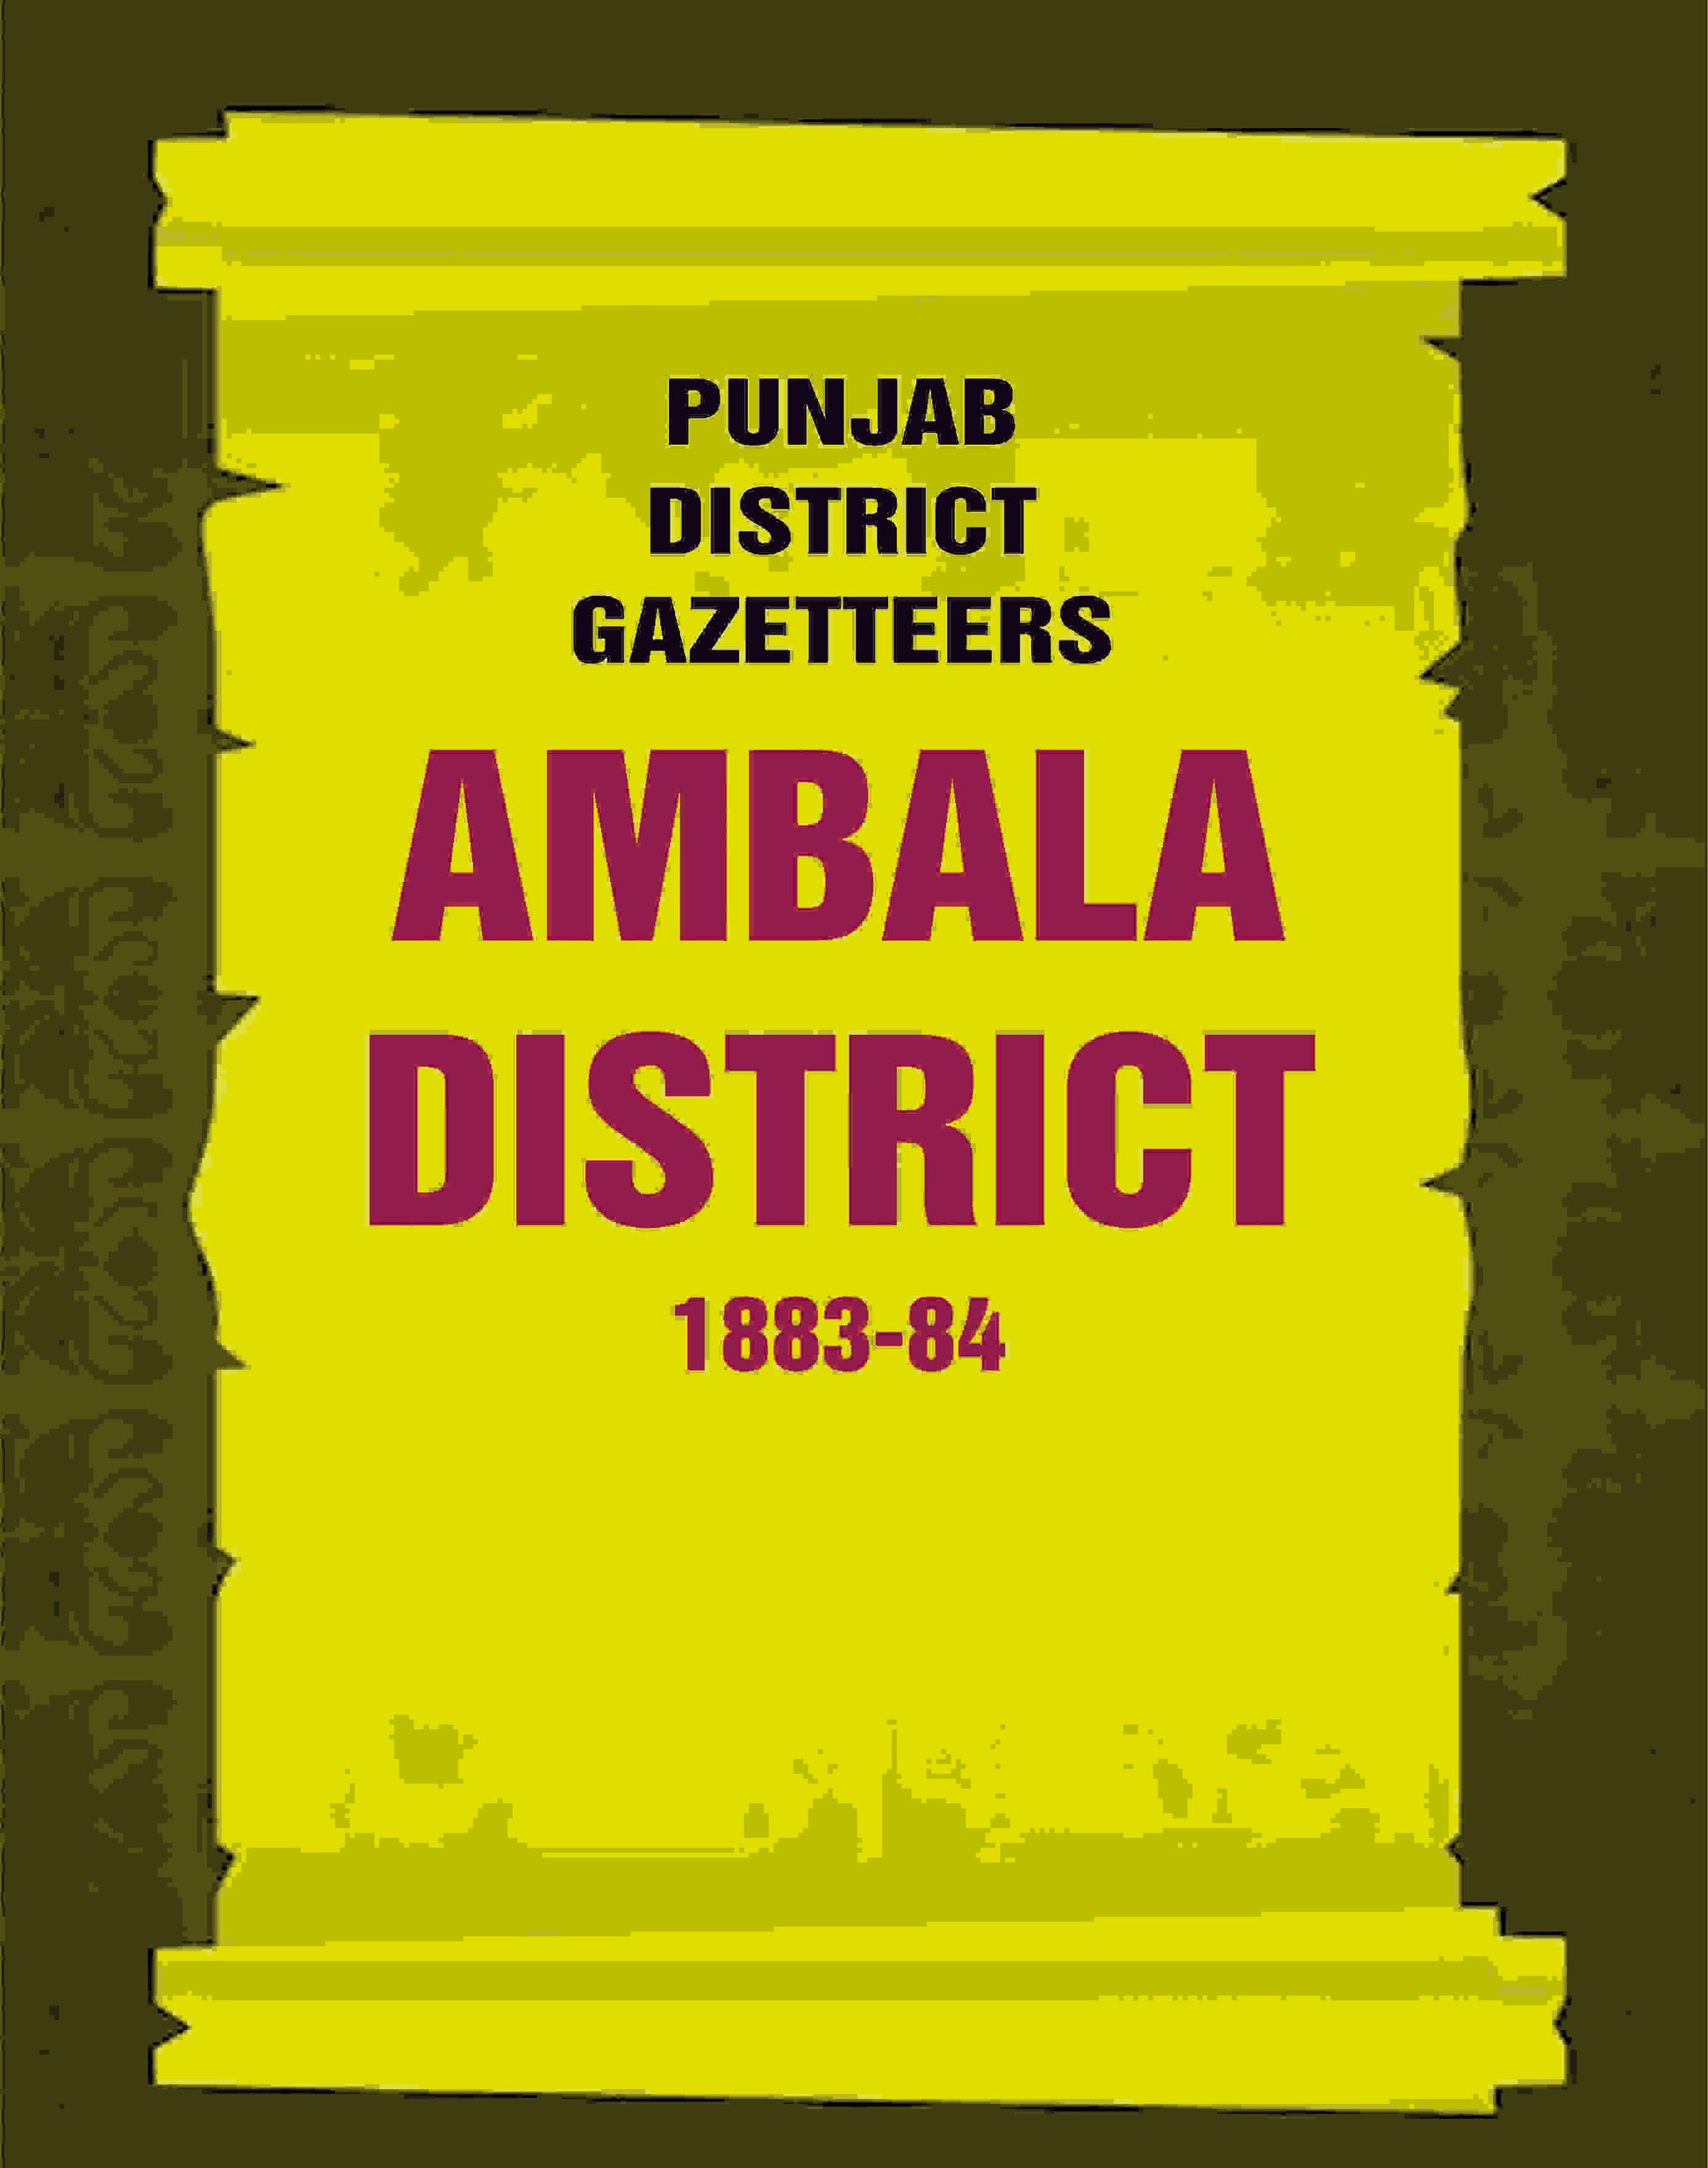 Punjab District Gazetteers: Ambala District 1883-84